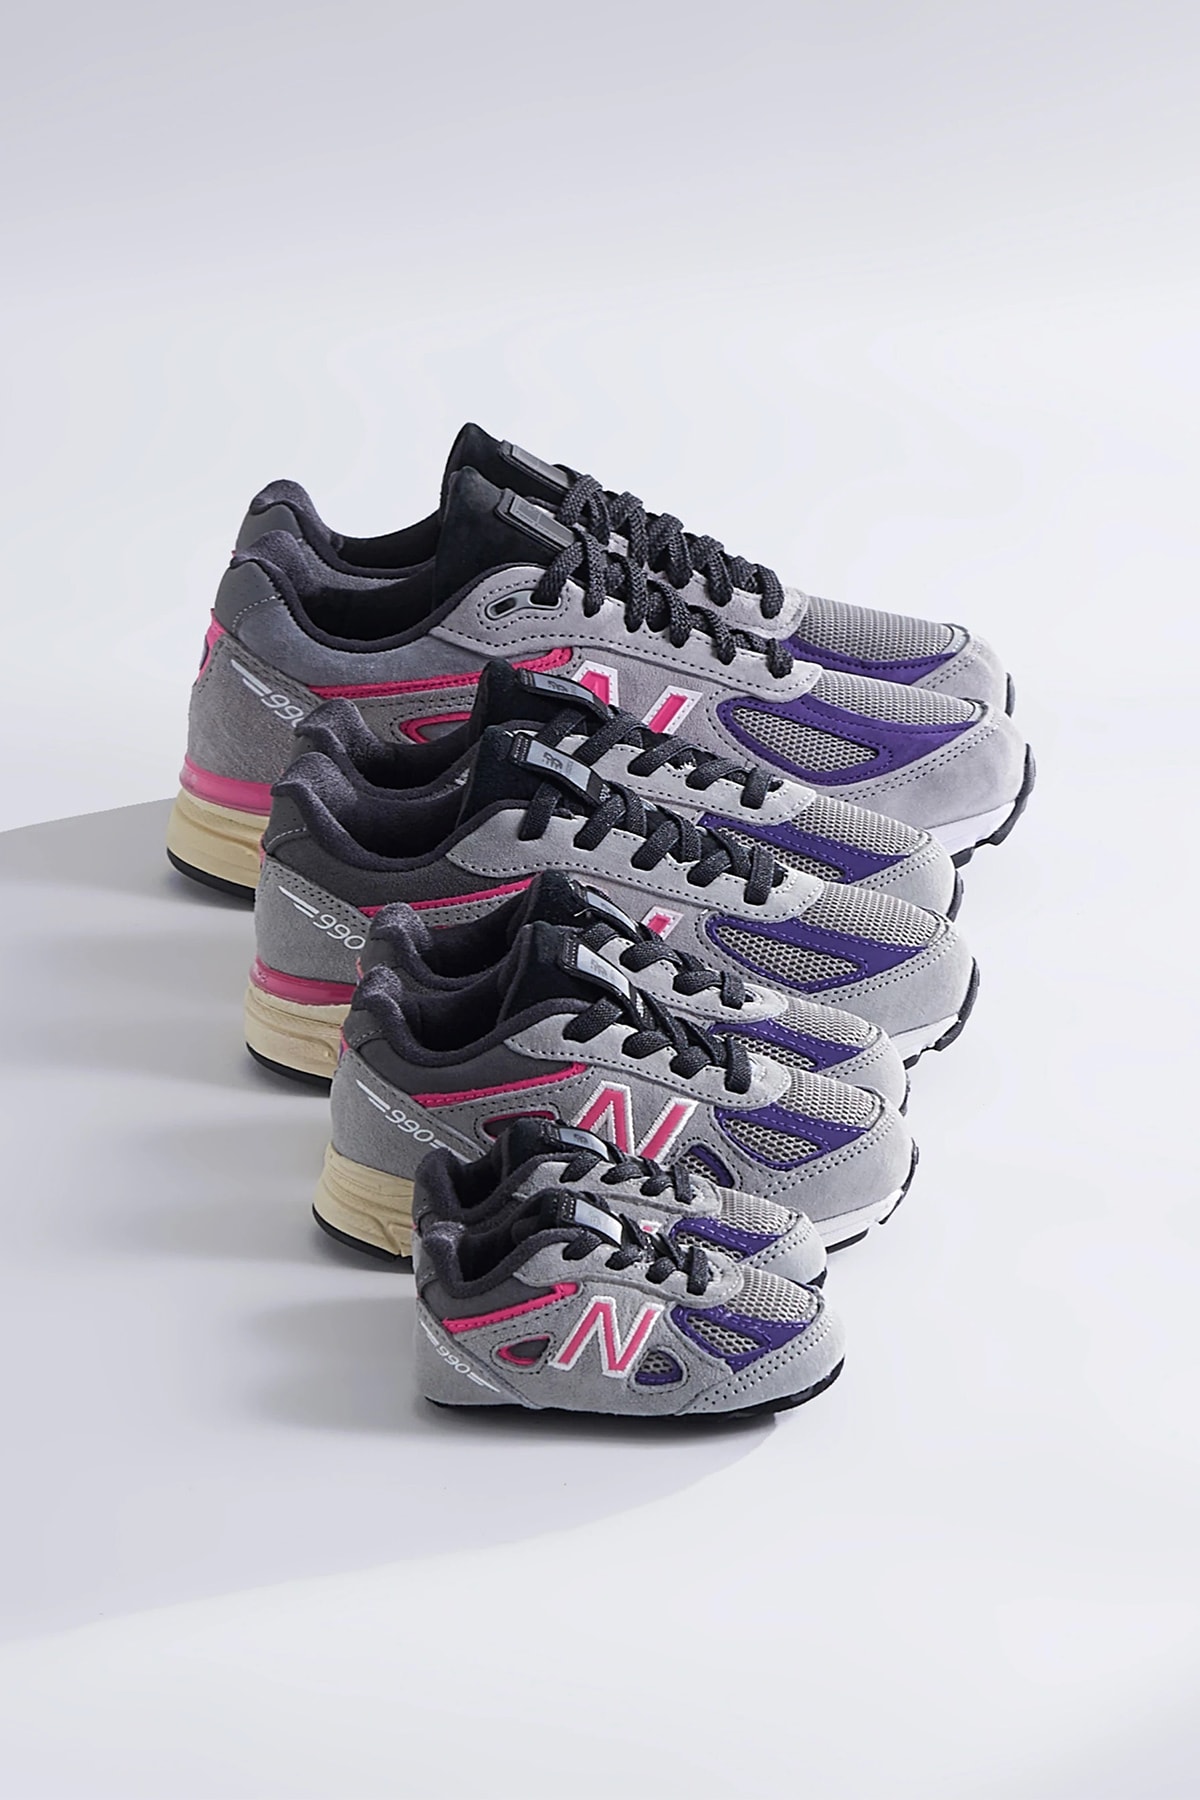 KITH x New Balance 990v4 最新聯乘鞋款發售情報正式公佈